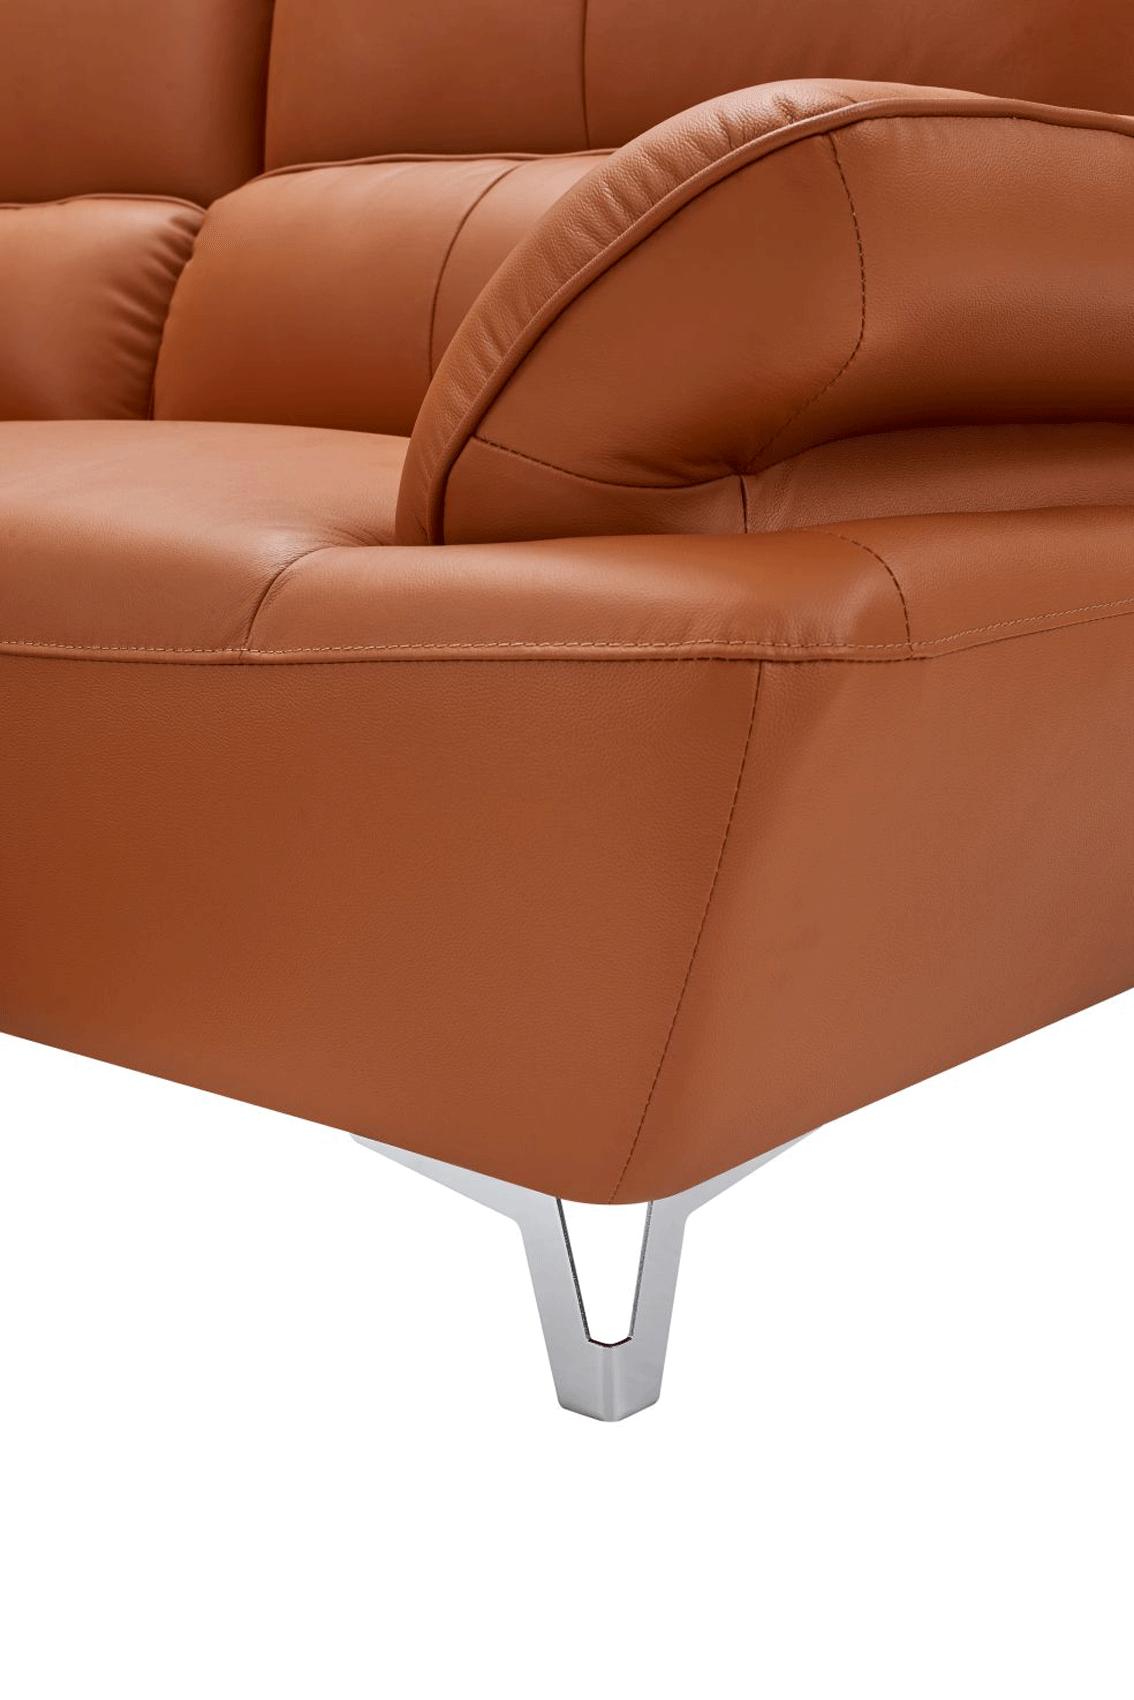 

    
1810 Orange-2PC Orange Top-grain Leather Sofa Set 2Pcs Contemporary ESF 1810
